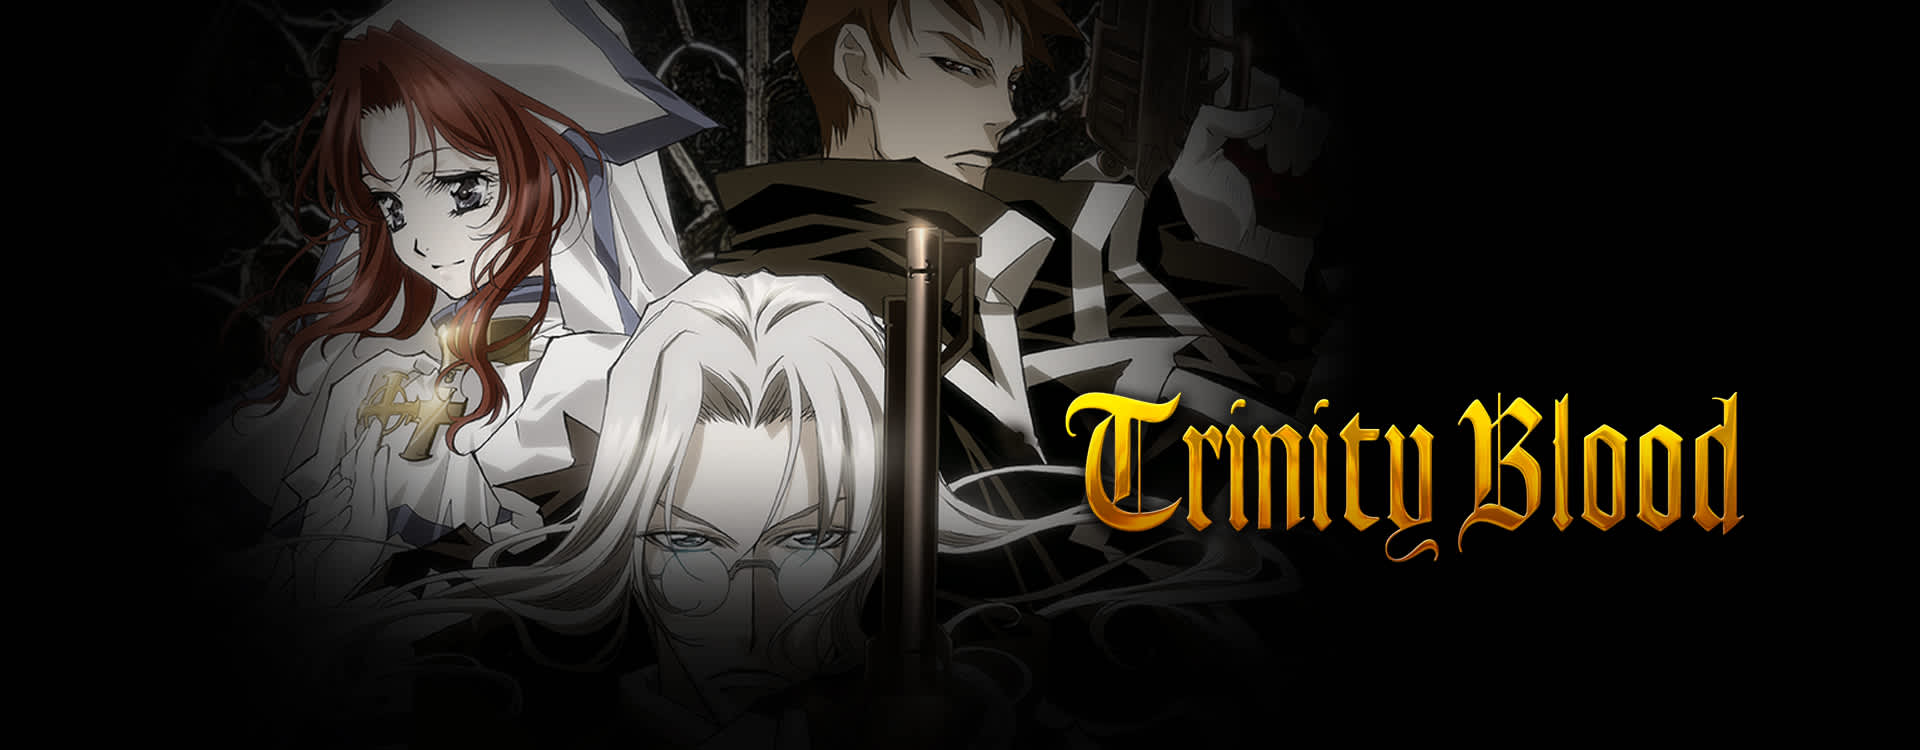 Trinity Blood Episode 18 Sub Indo